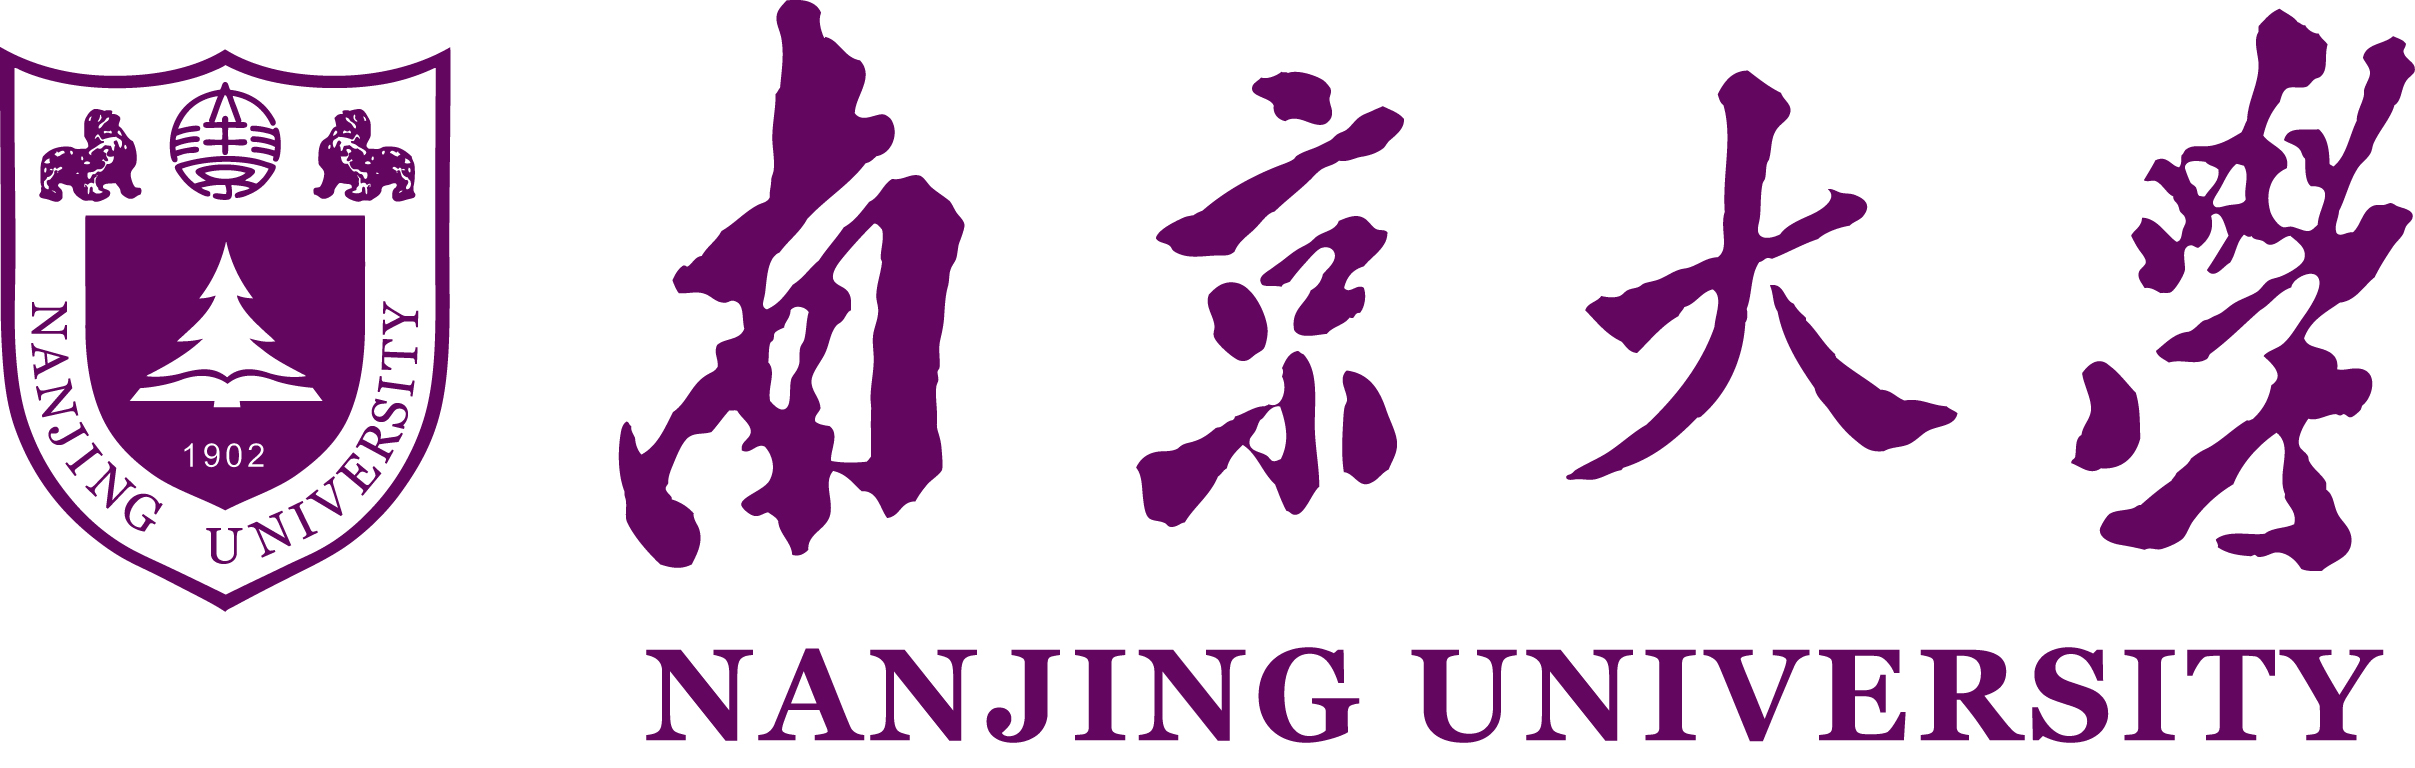 नानजिंग विश्वविद्यालय | विदेश में अध्ययन